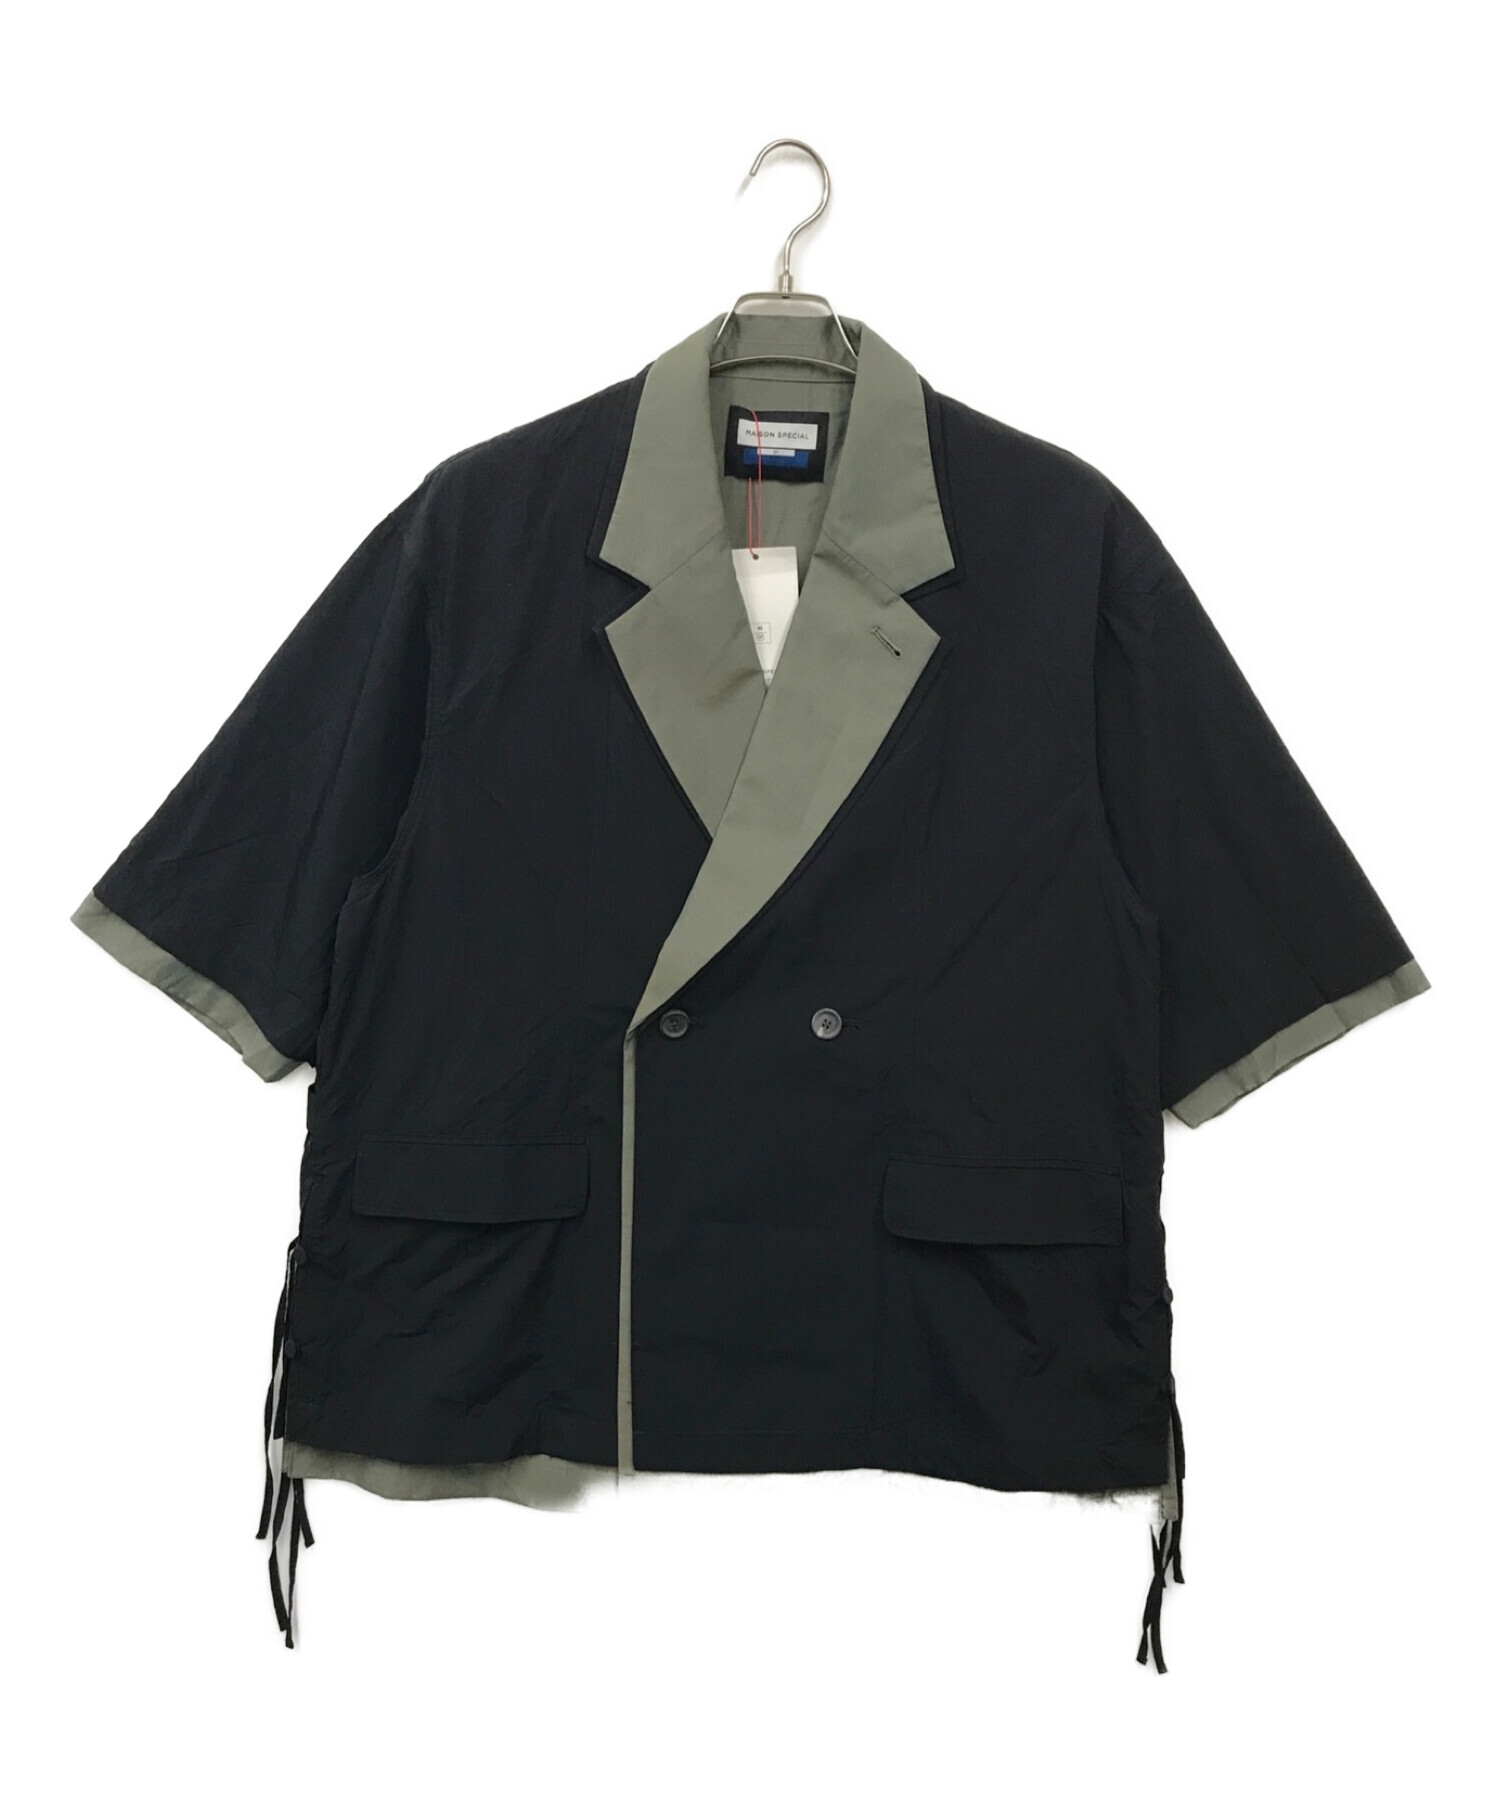 MAISON SPECIAL (メゾンスペシャル) プライムオーバーレイヤリングテーラードジャケットシャツ ネイビー サイズ:1 未使用品